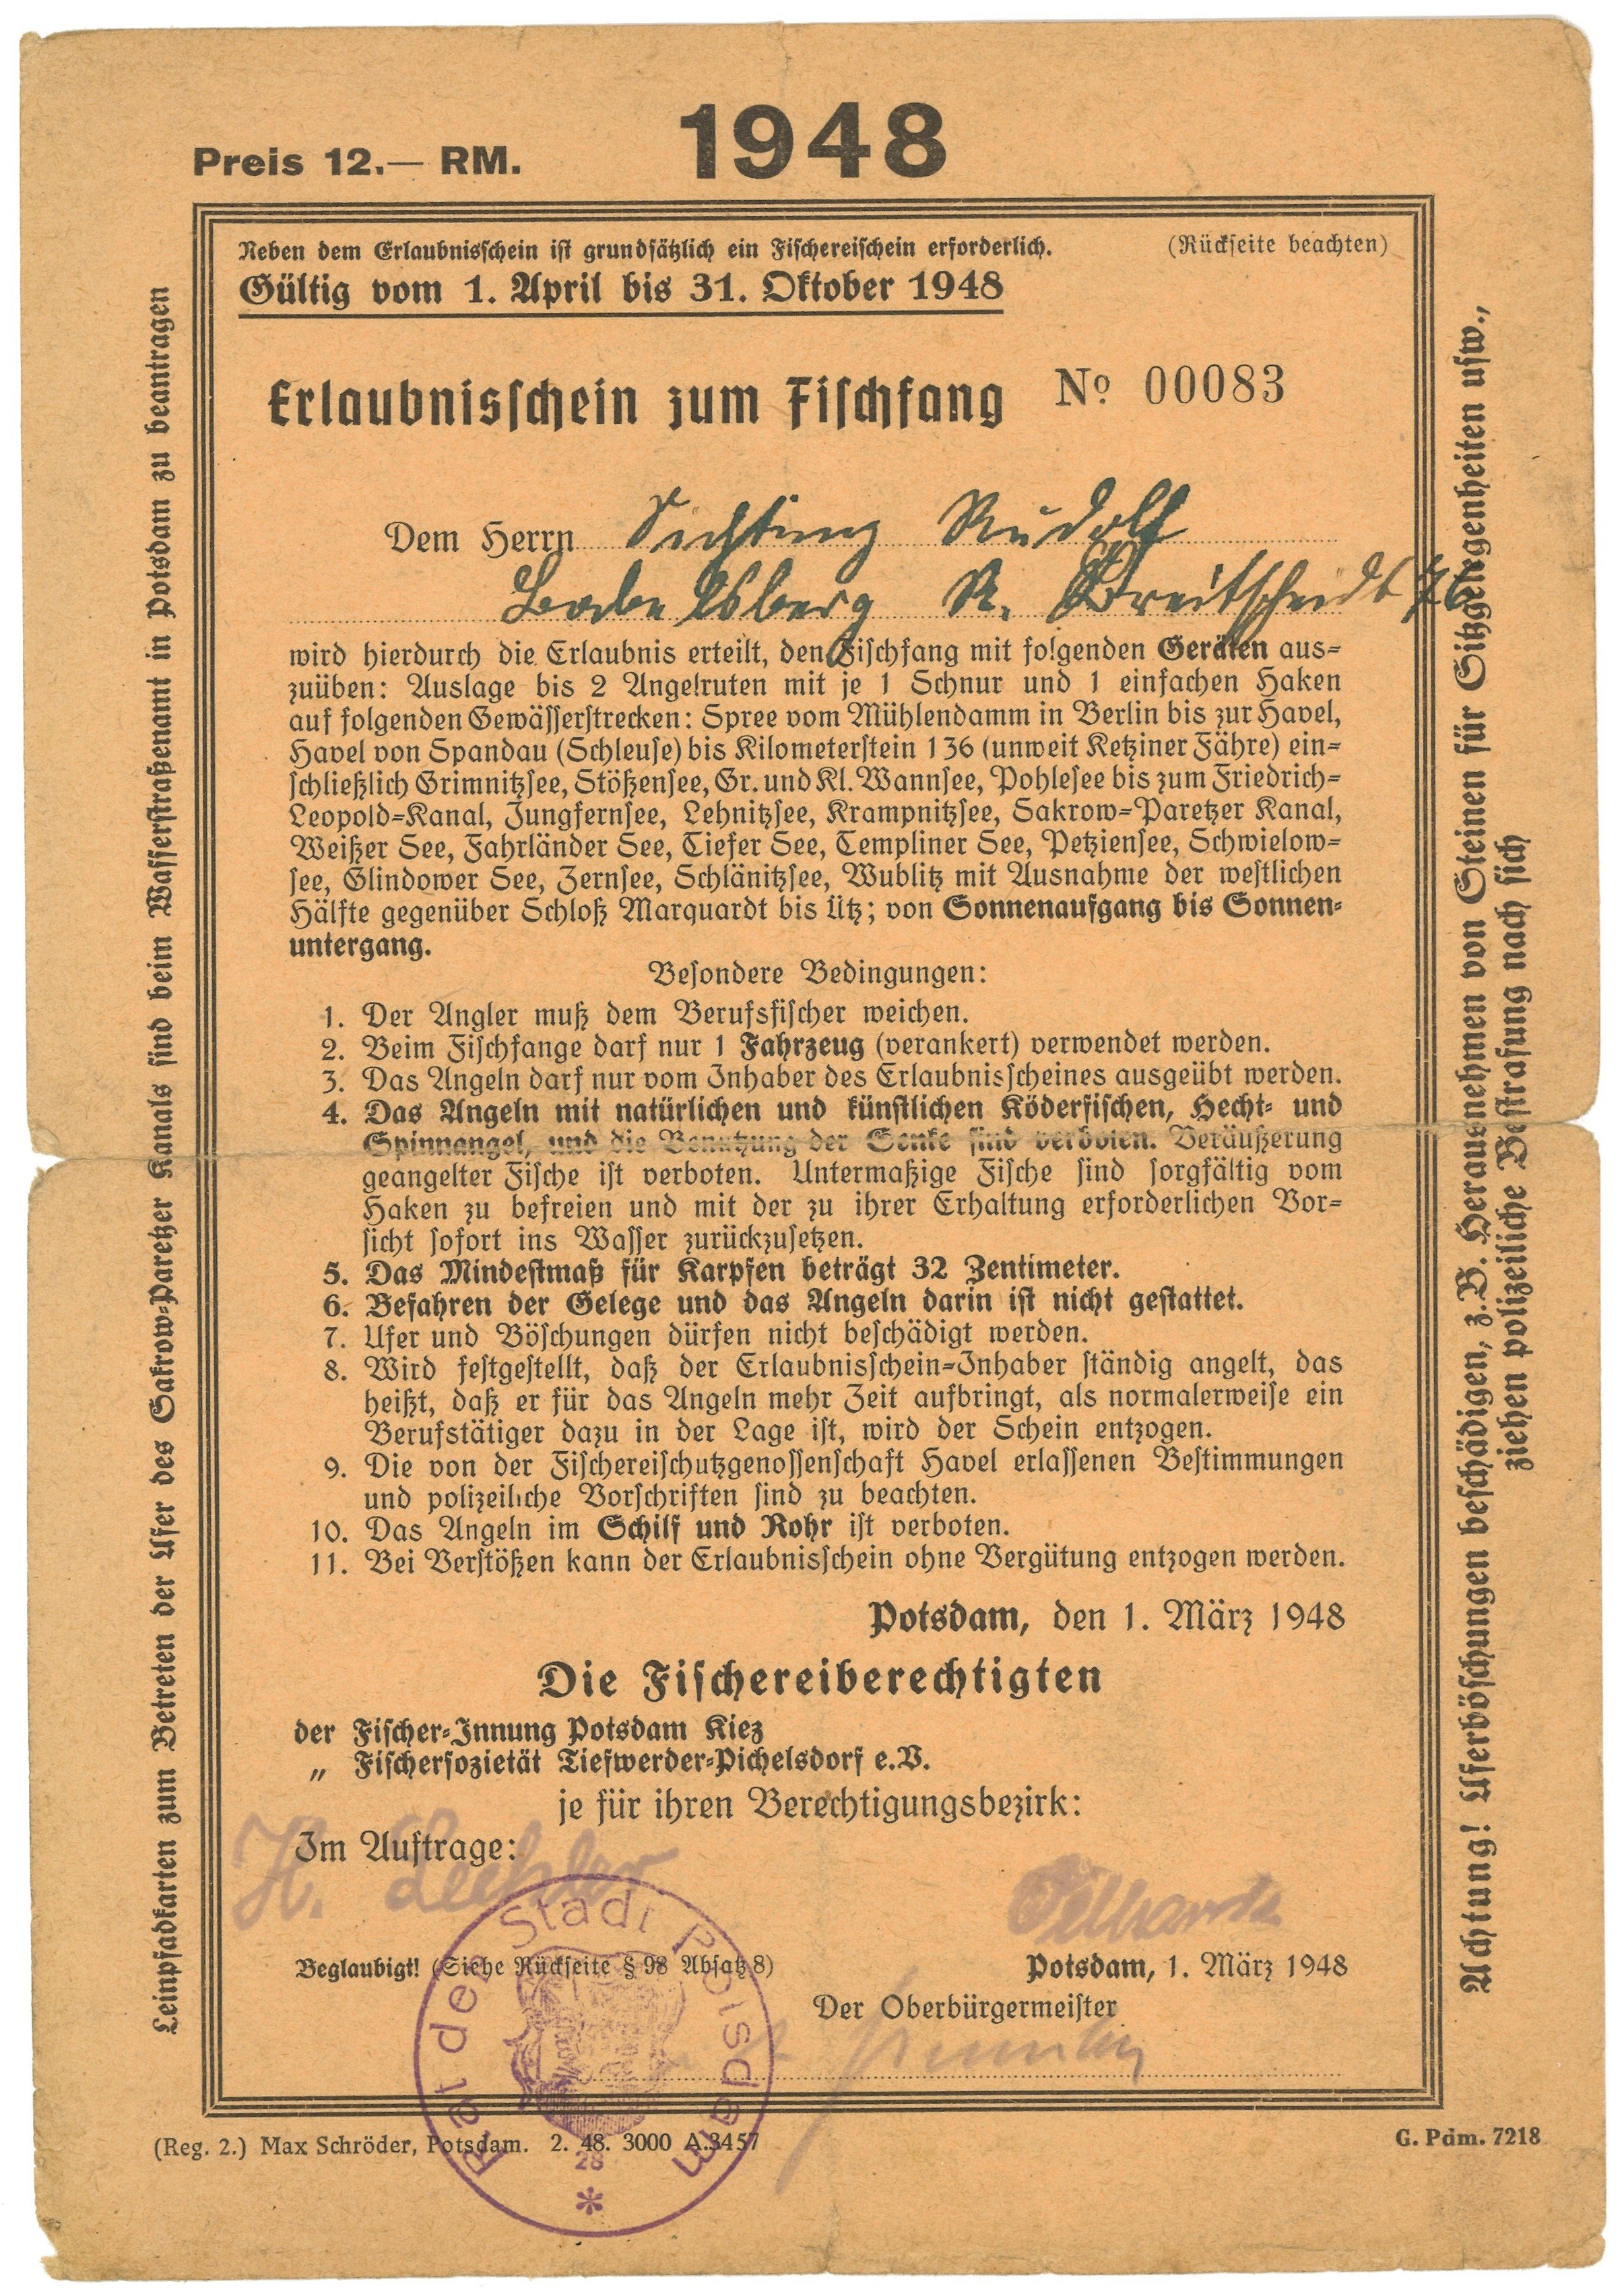 Erlaubnisschein zum Fischfang für Rudolf Sichting in Potsdam-Babelsberg 1948 (Landesgeschichtliche Vereinigung für die Mark Brandenburg e.V., Archiv CC BY)